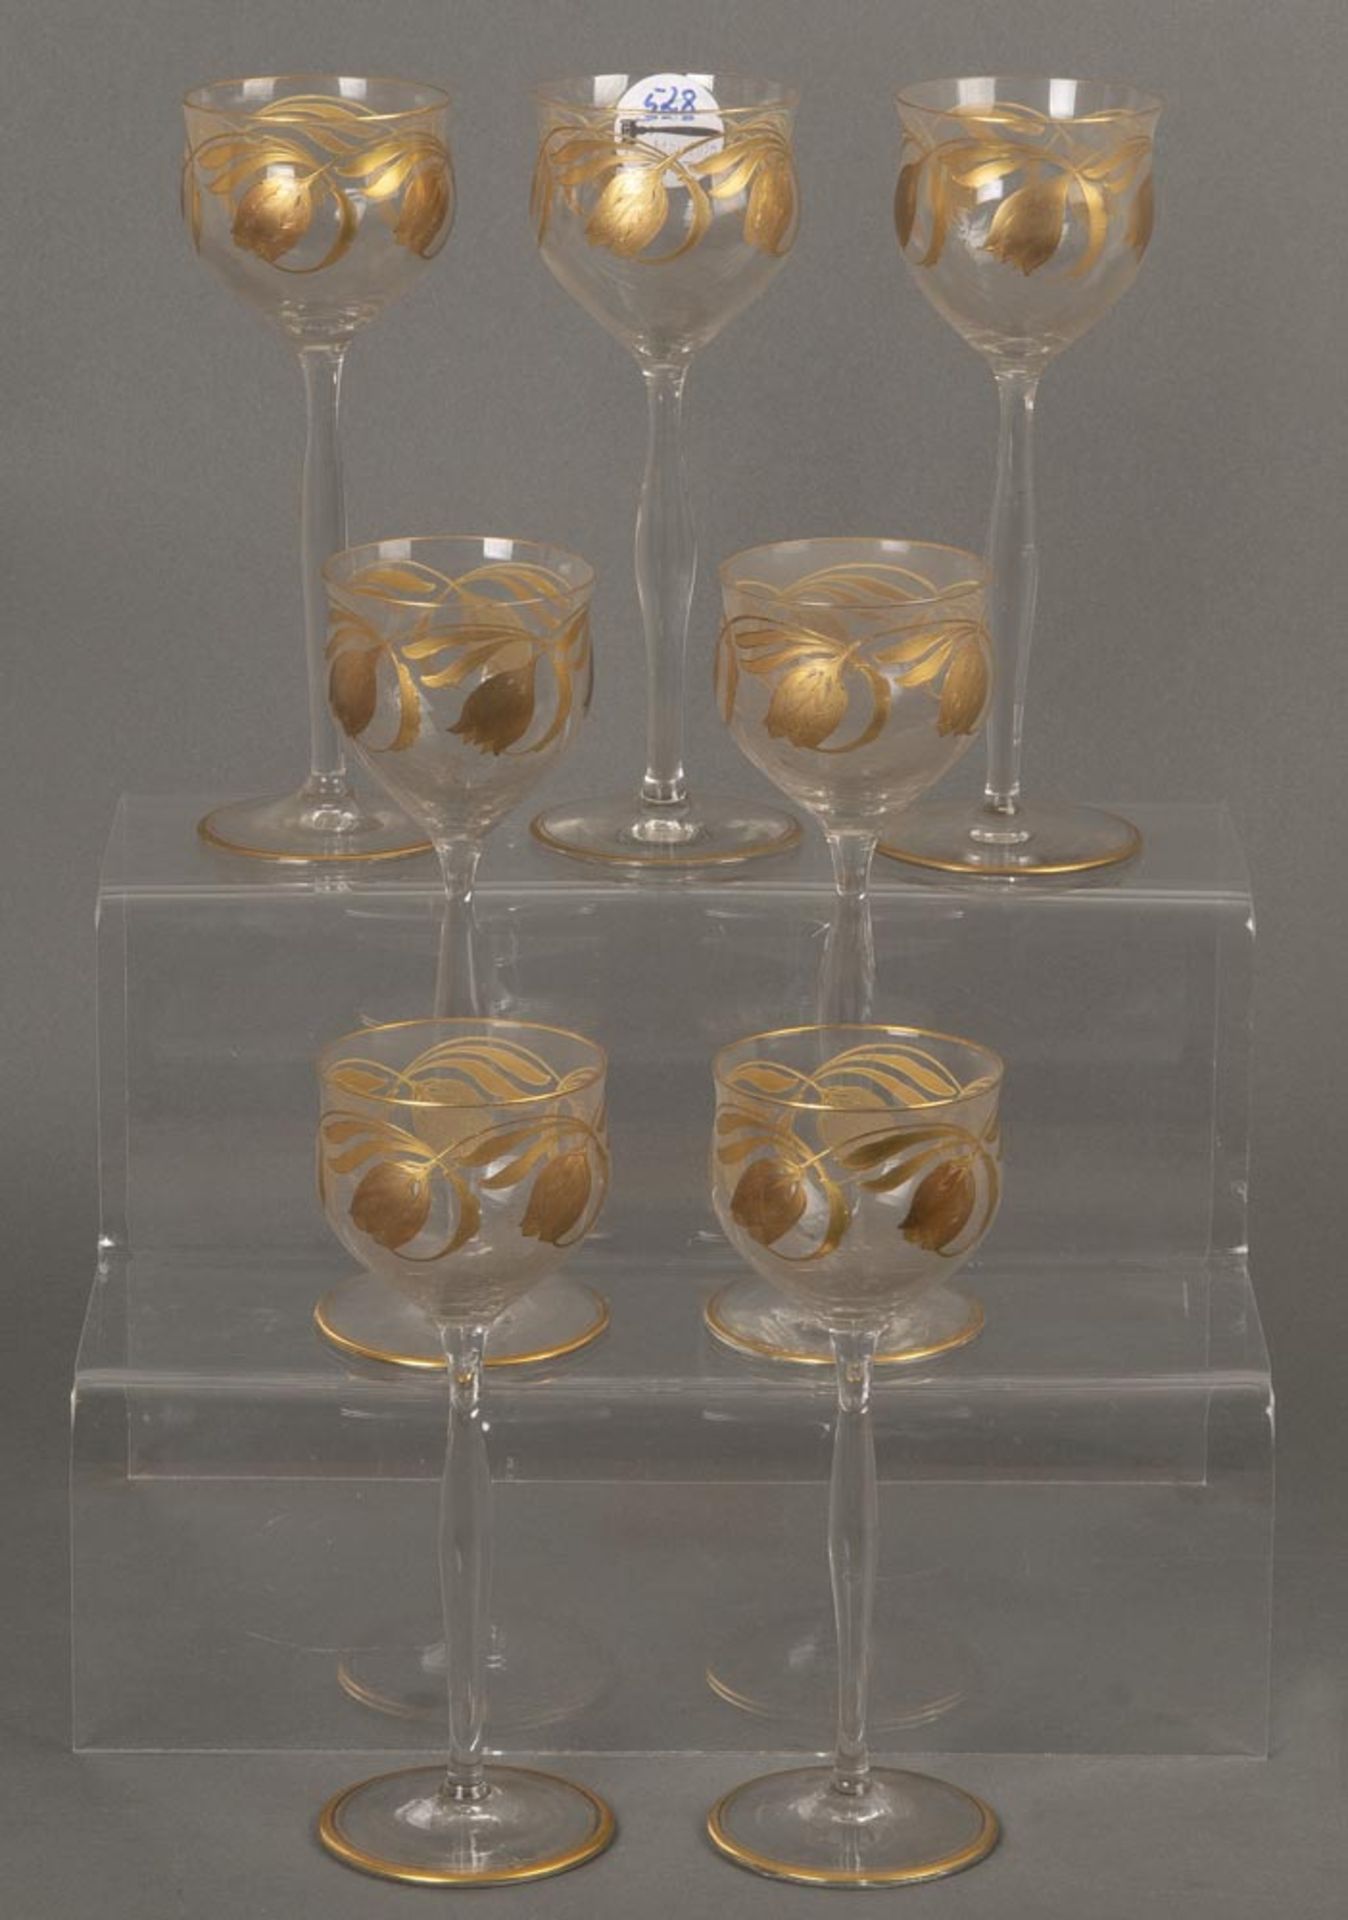 Sieben Weingläser. Wohl Theresienthal 20. Jh. Farbloses Glas, mit aufgelegten Ornamenten in Kaltgold